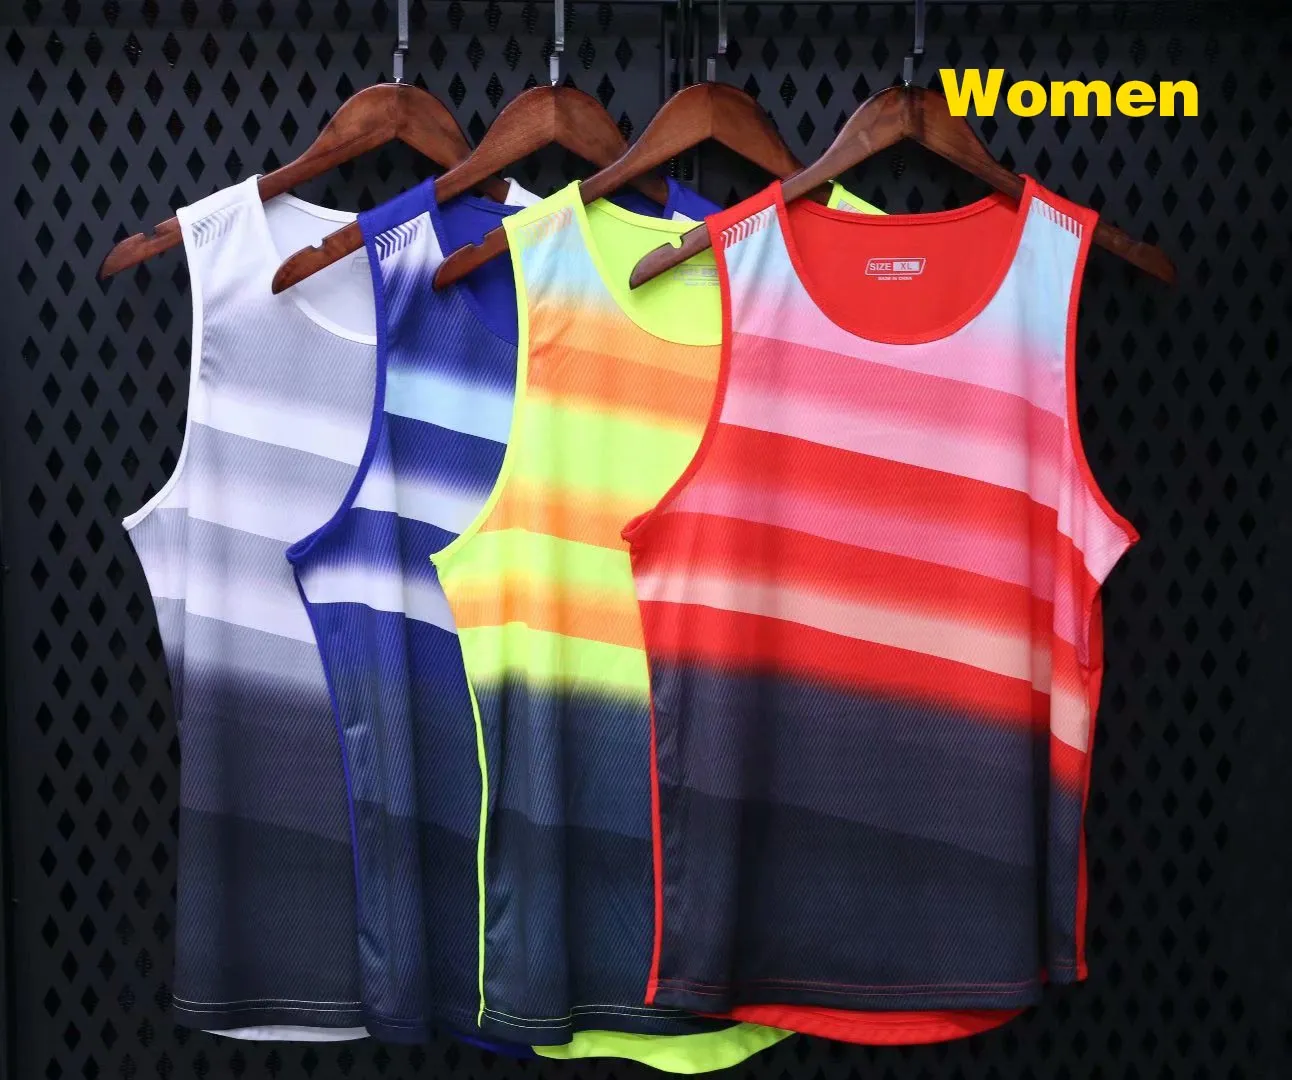 # 117 Erkek Kadın Yelek + Şort Yarışması Koşu Setleri Parça ve Alan Spor Sprint Runları Uygun Erkek Kadın Maraton Giysi Kitleri